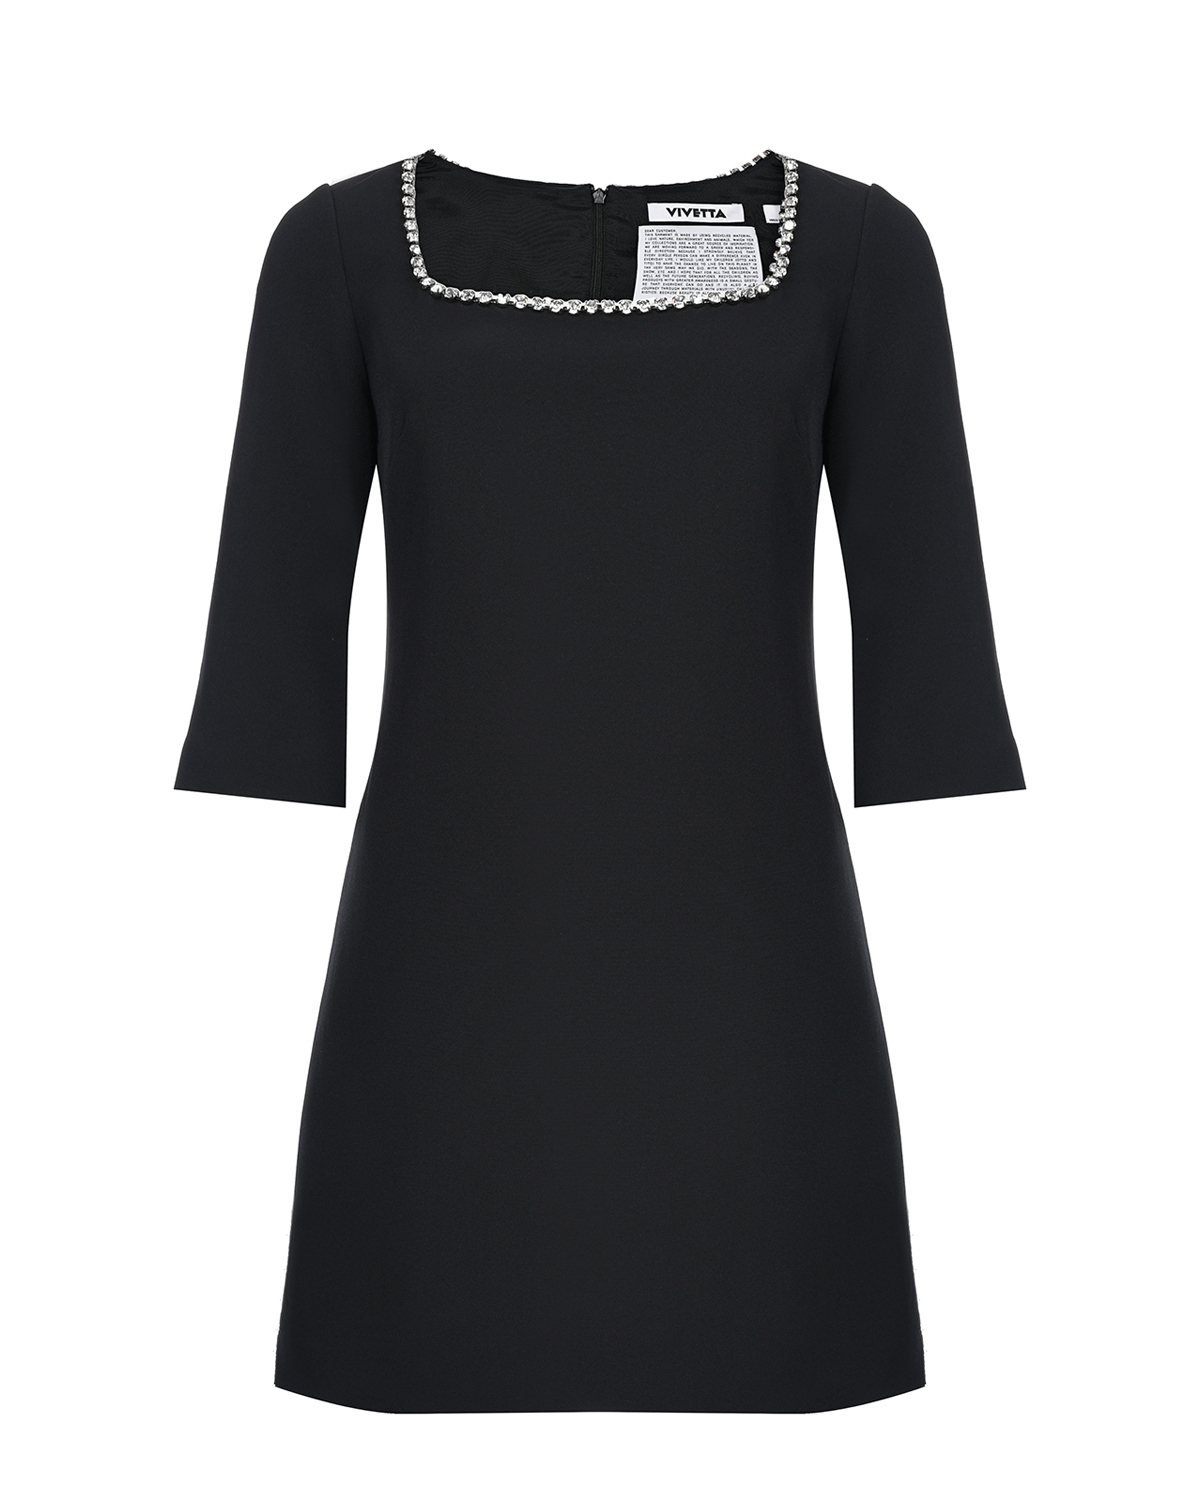 Черное платье с рукавами 3/4 Vivetta, размер 42, цвет черный Черное платье с рукавами 3/4 Vivetta - фото 1